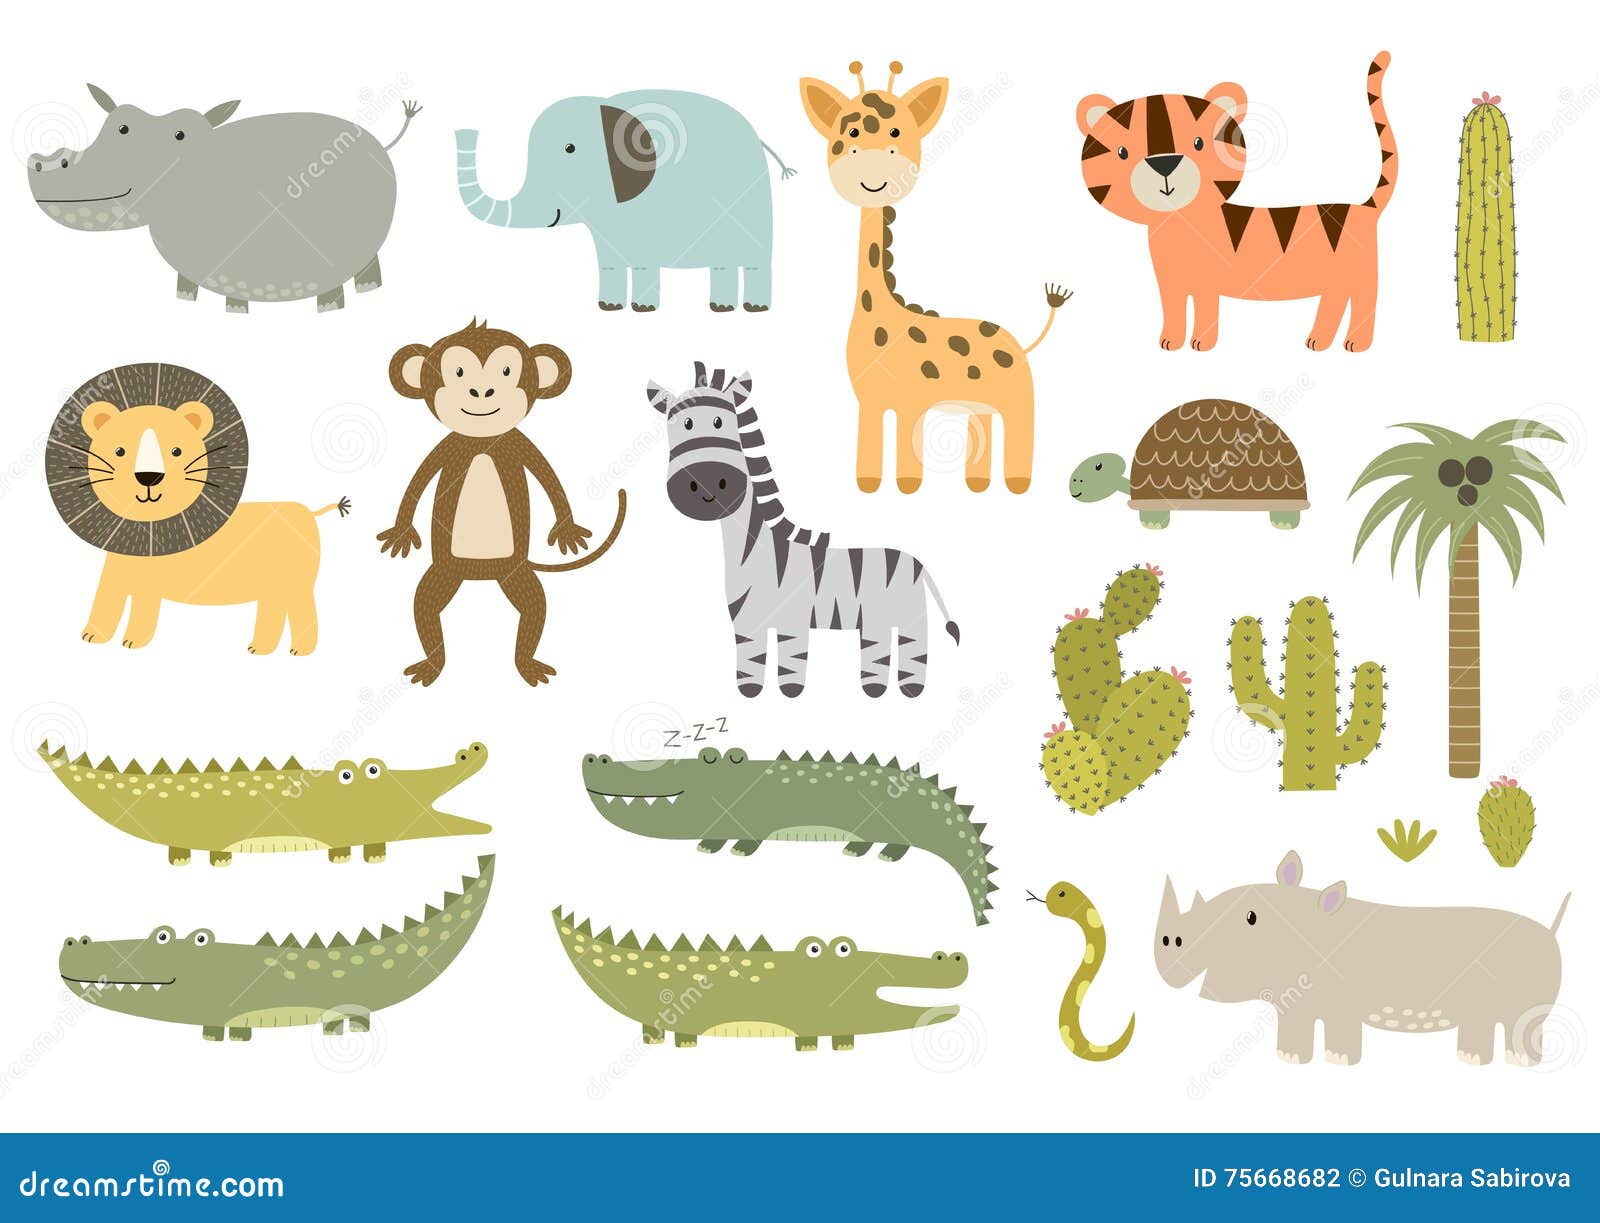 cute safari animals collection